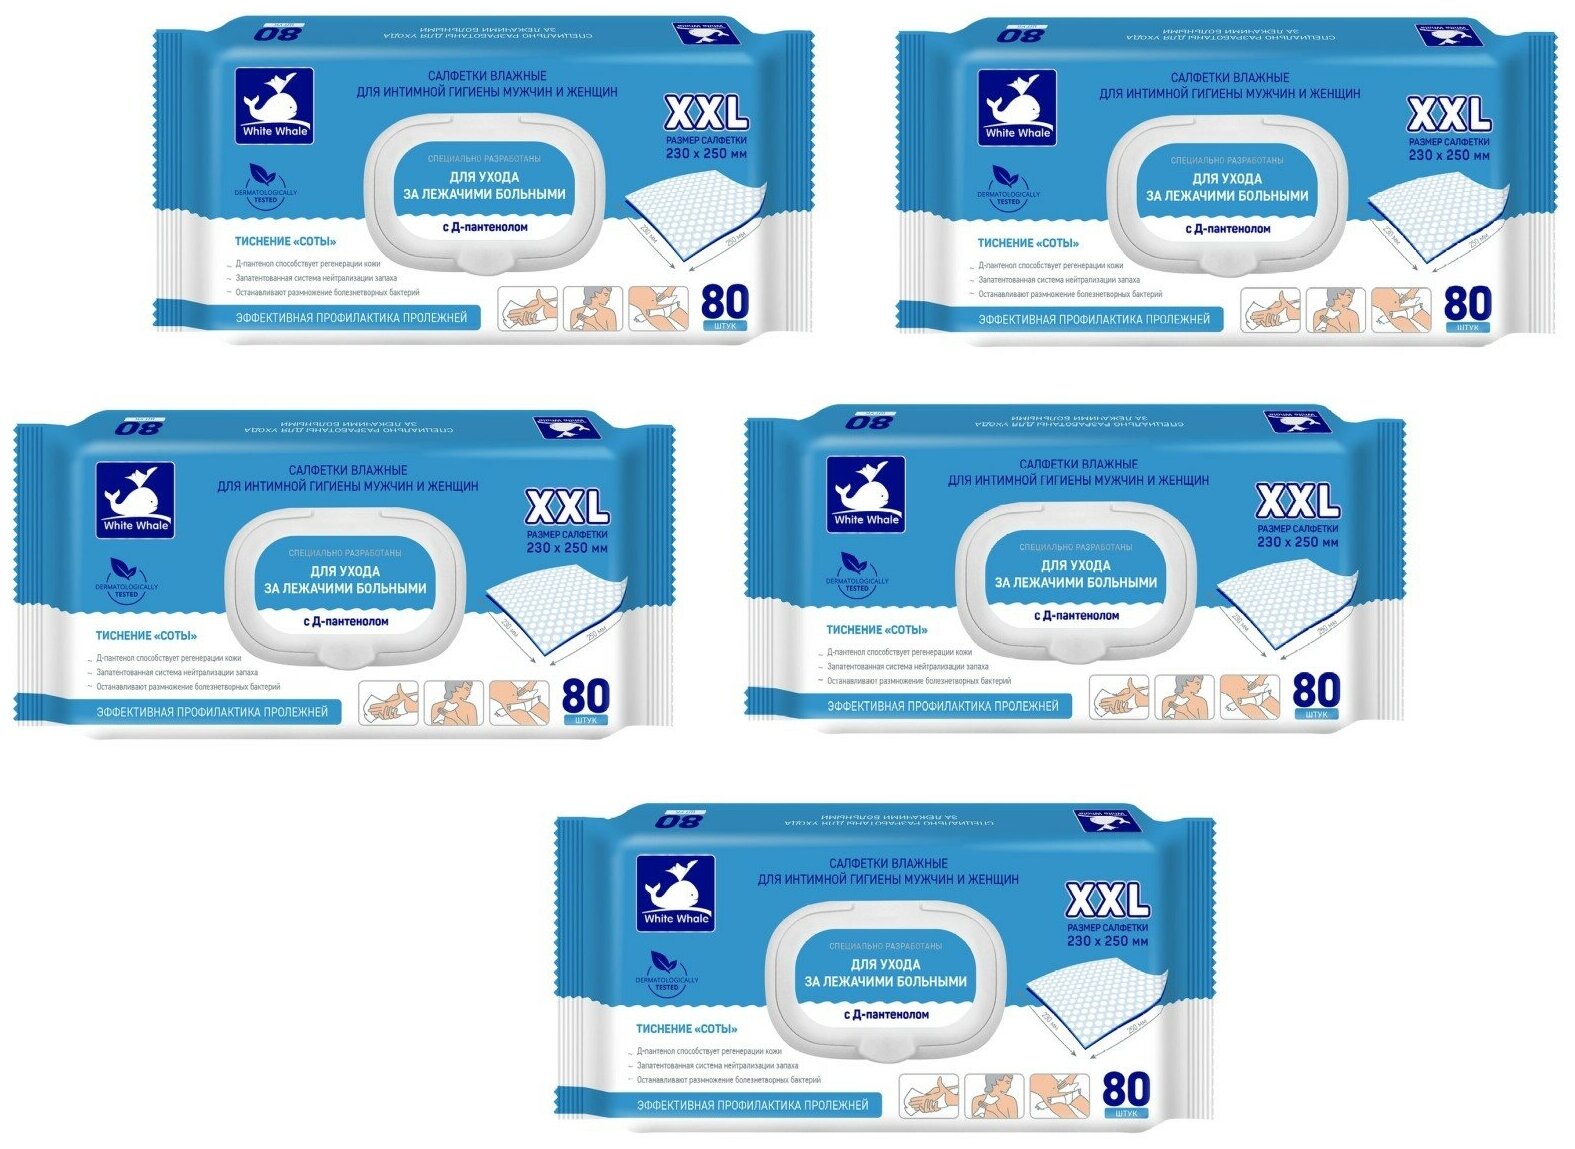 Влажные салфетки для лежачих больных White whale 80 шт. 5 упаковок